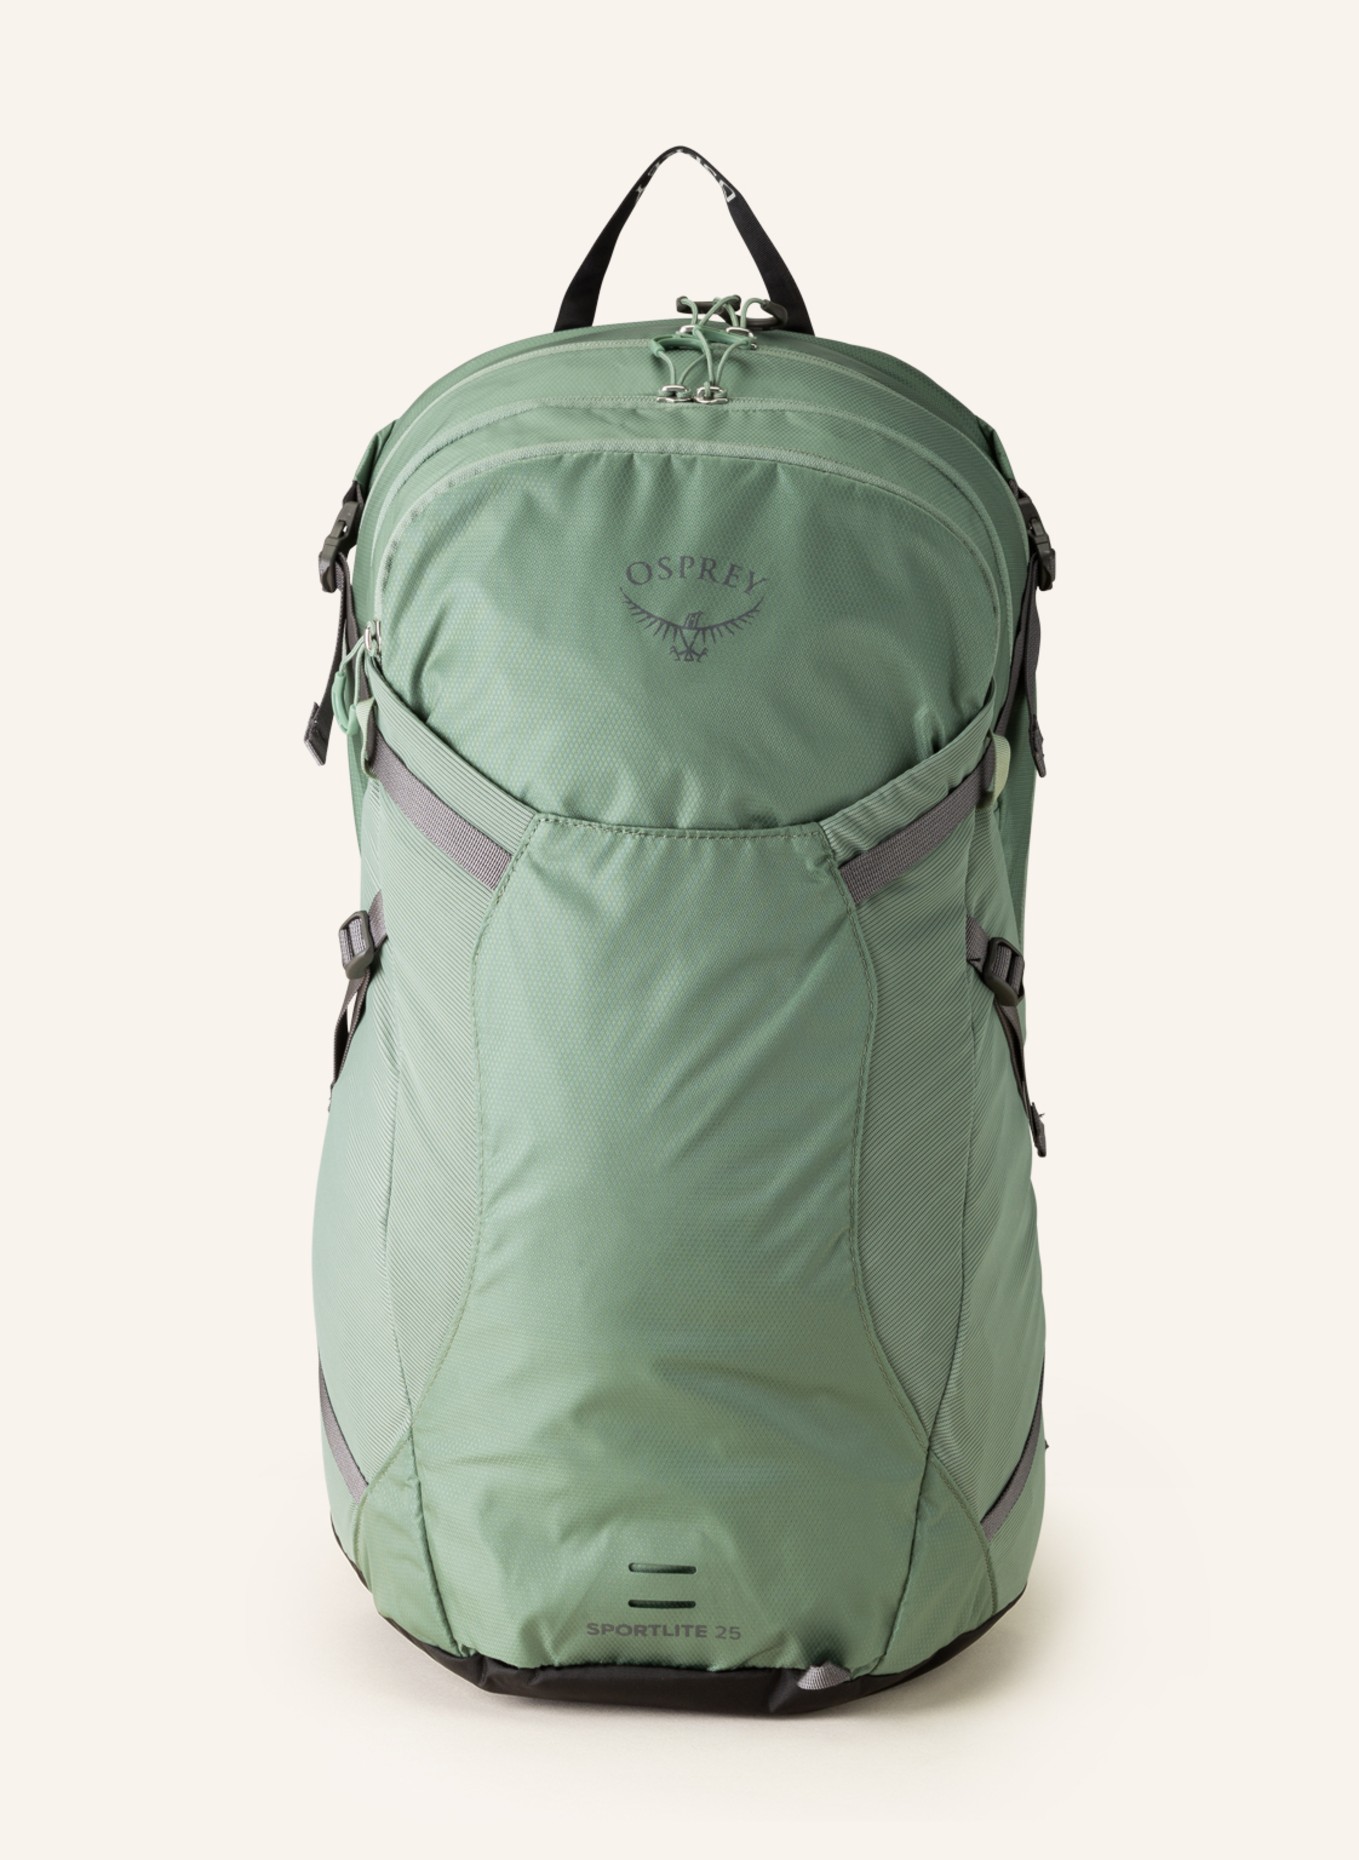 OSPREY Backpack SPORTLITE, Color: GREEN (Image 1)